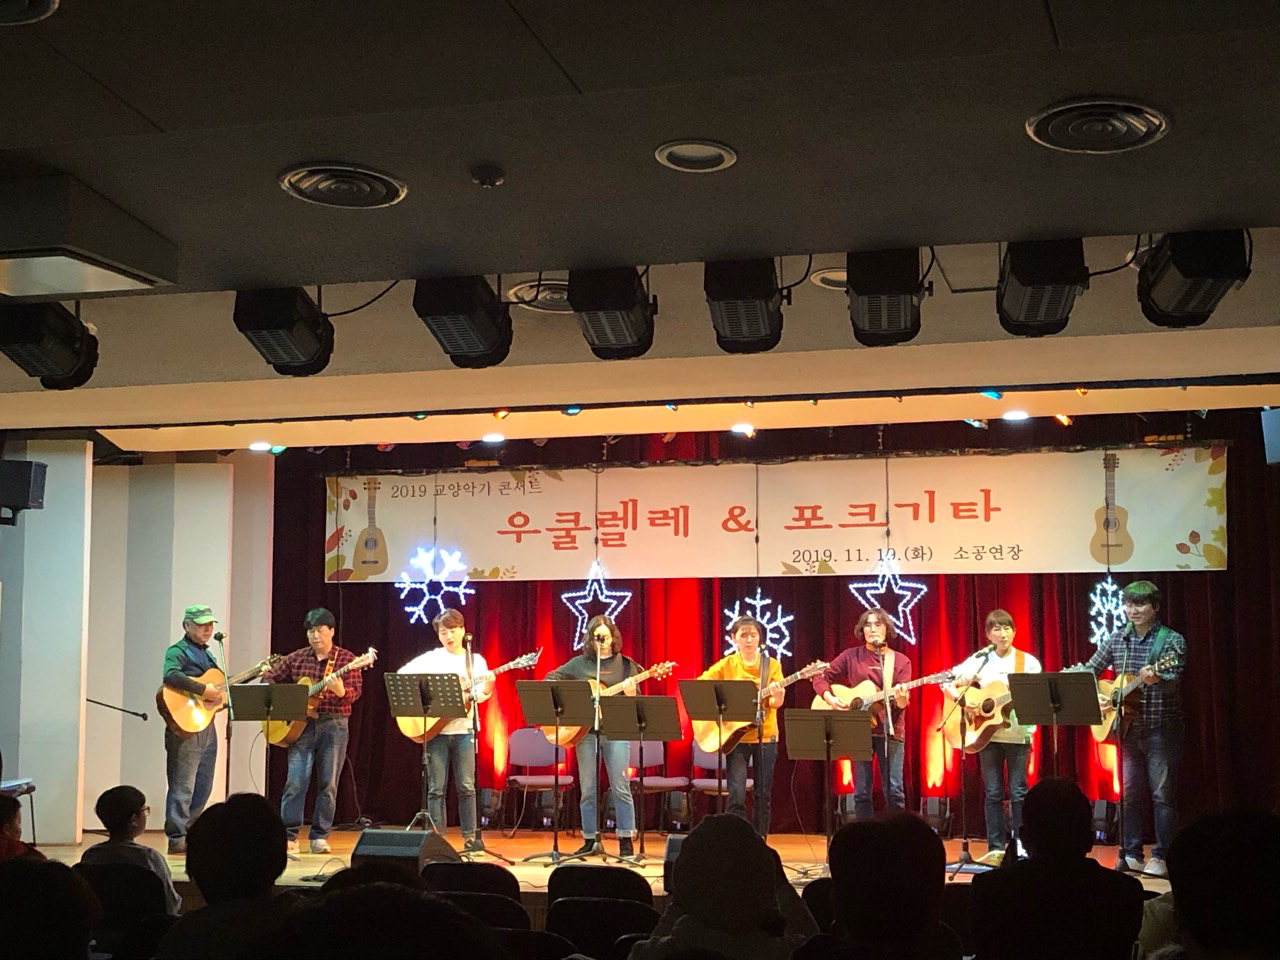 지난해 문화예술교육 강좌에 참여한 금산다락원 교양악기반이 공연을 하고 있다. / 금산군 제공